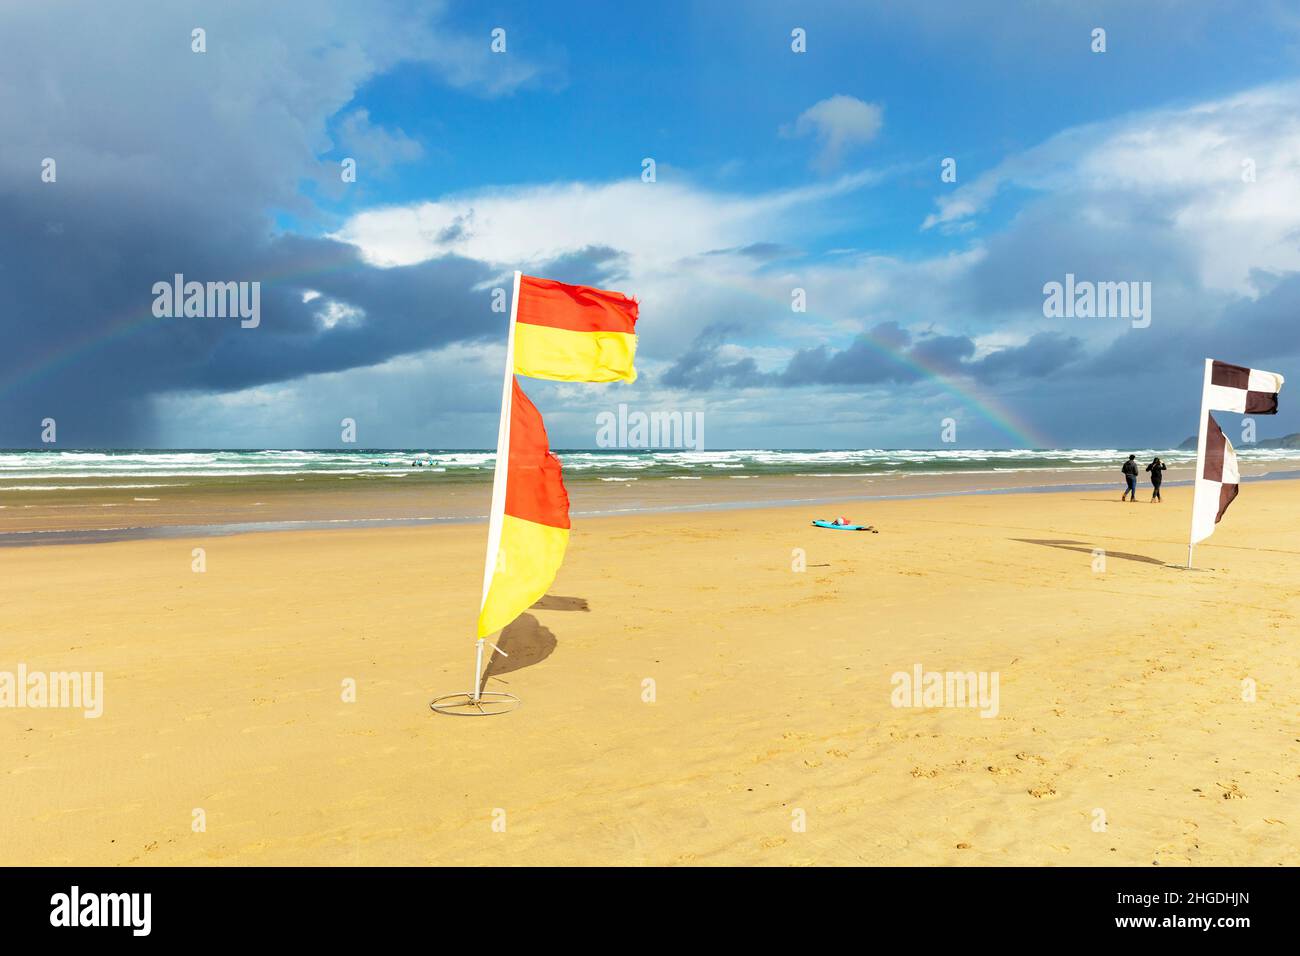 Las zonas de baño designadas están marcadas en las playas con banderas rojas y amarillas de la RNLI. Estas banderas indican las áreas patrulladas por socorristas. En desig Foto de stock